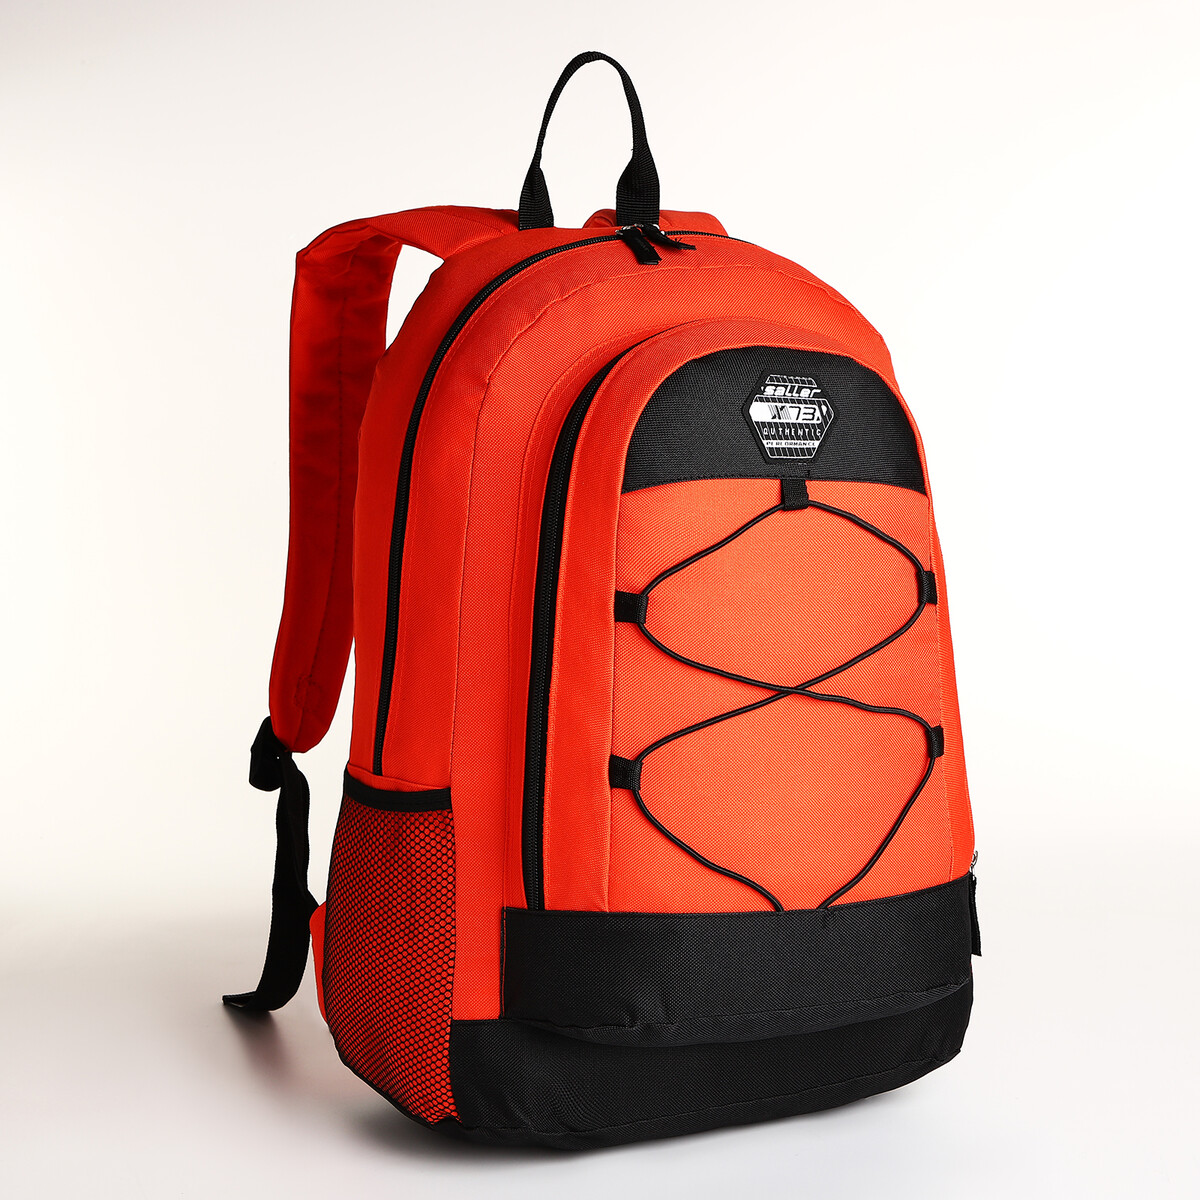 Рюкзак молодежный на молнии, 3 кармана, цвет оранжевый